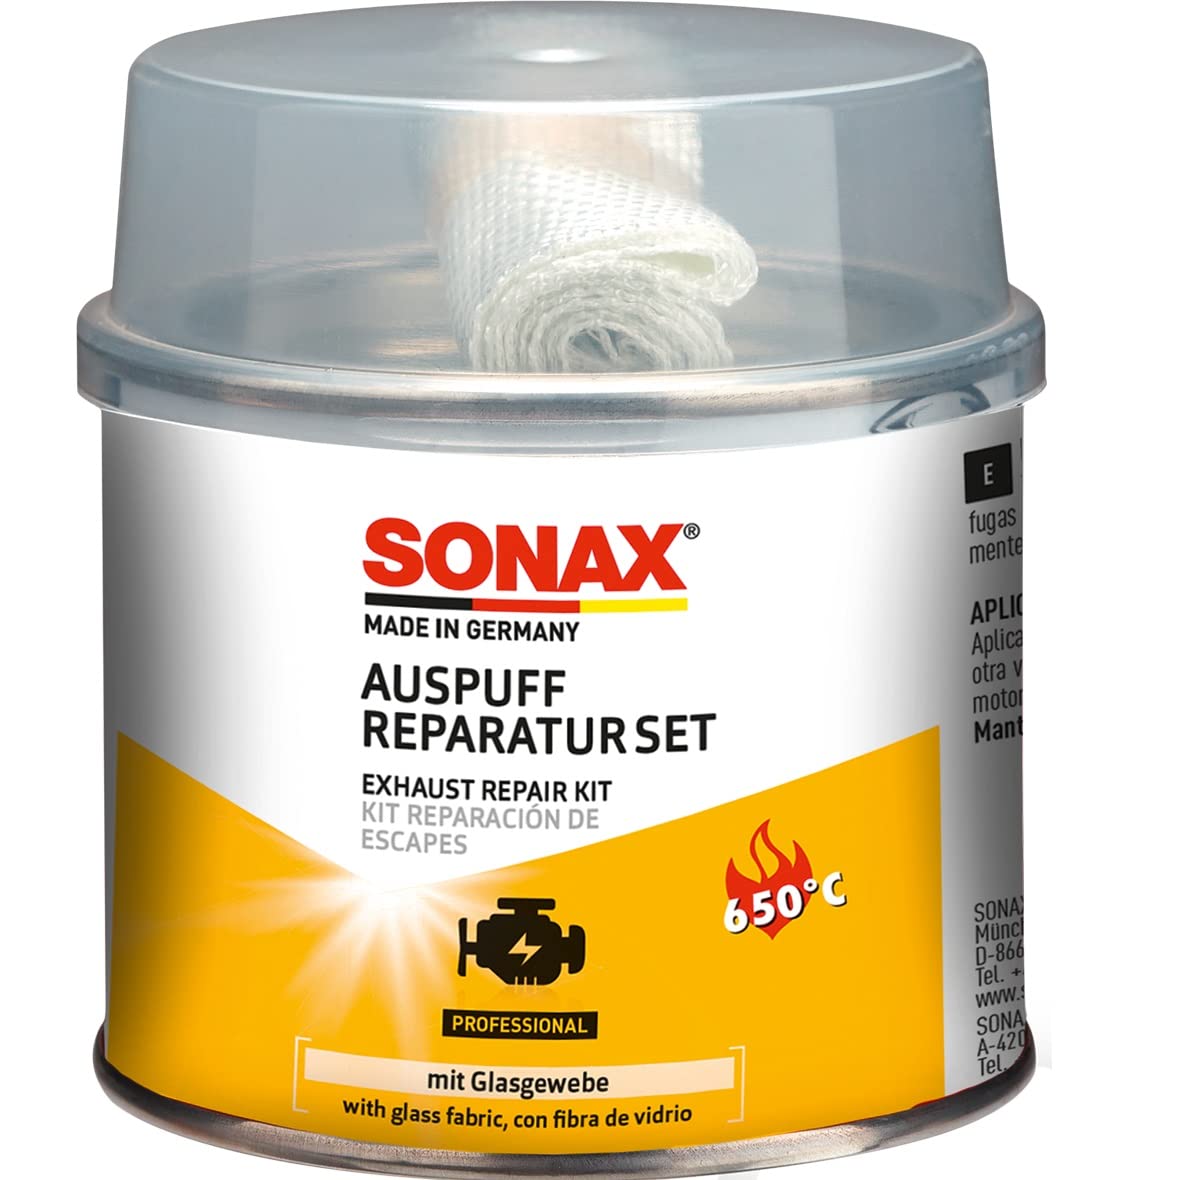 SONAX AuspuffReparaturSet (200 g) verschließt größere Risse, Löcher & undichte Stellen dauerhaft, schnell & absolut gasdicht | Art-Nr. 05531410 von SONAX